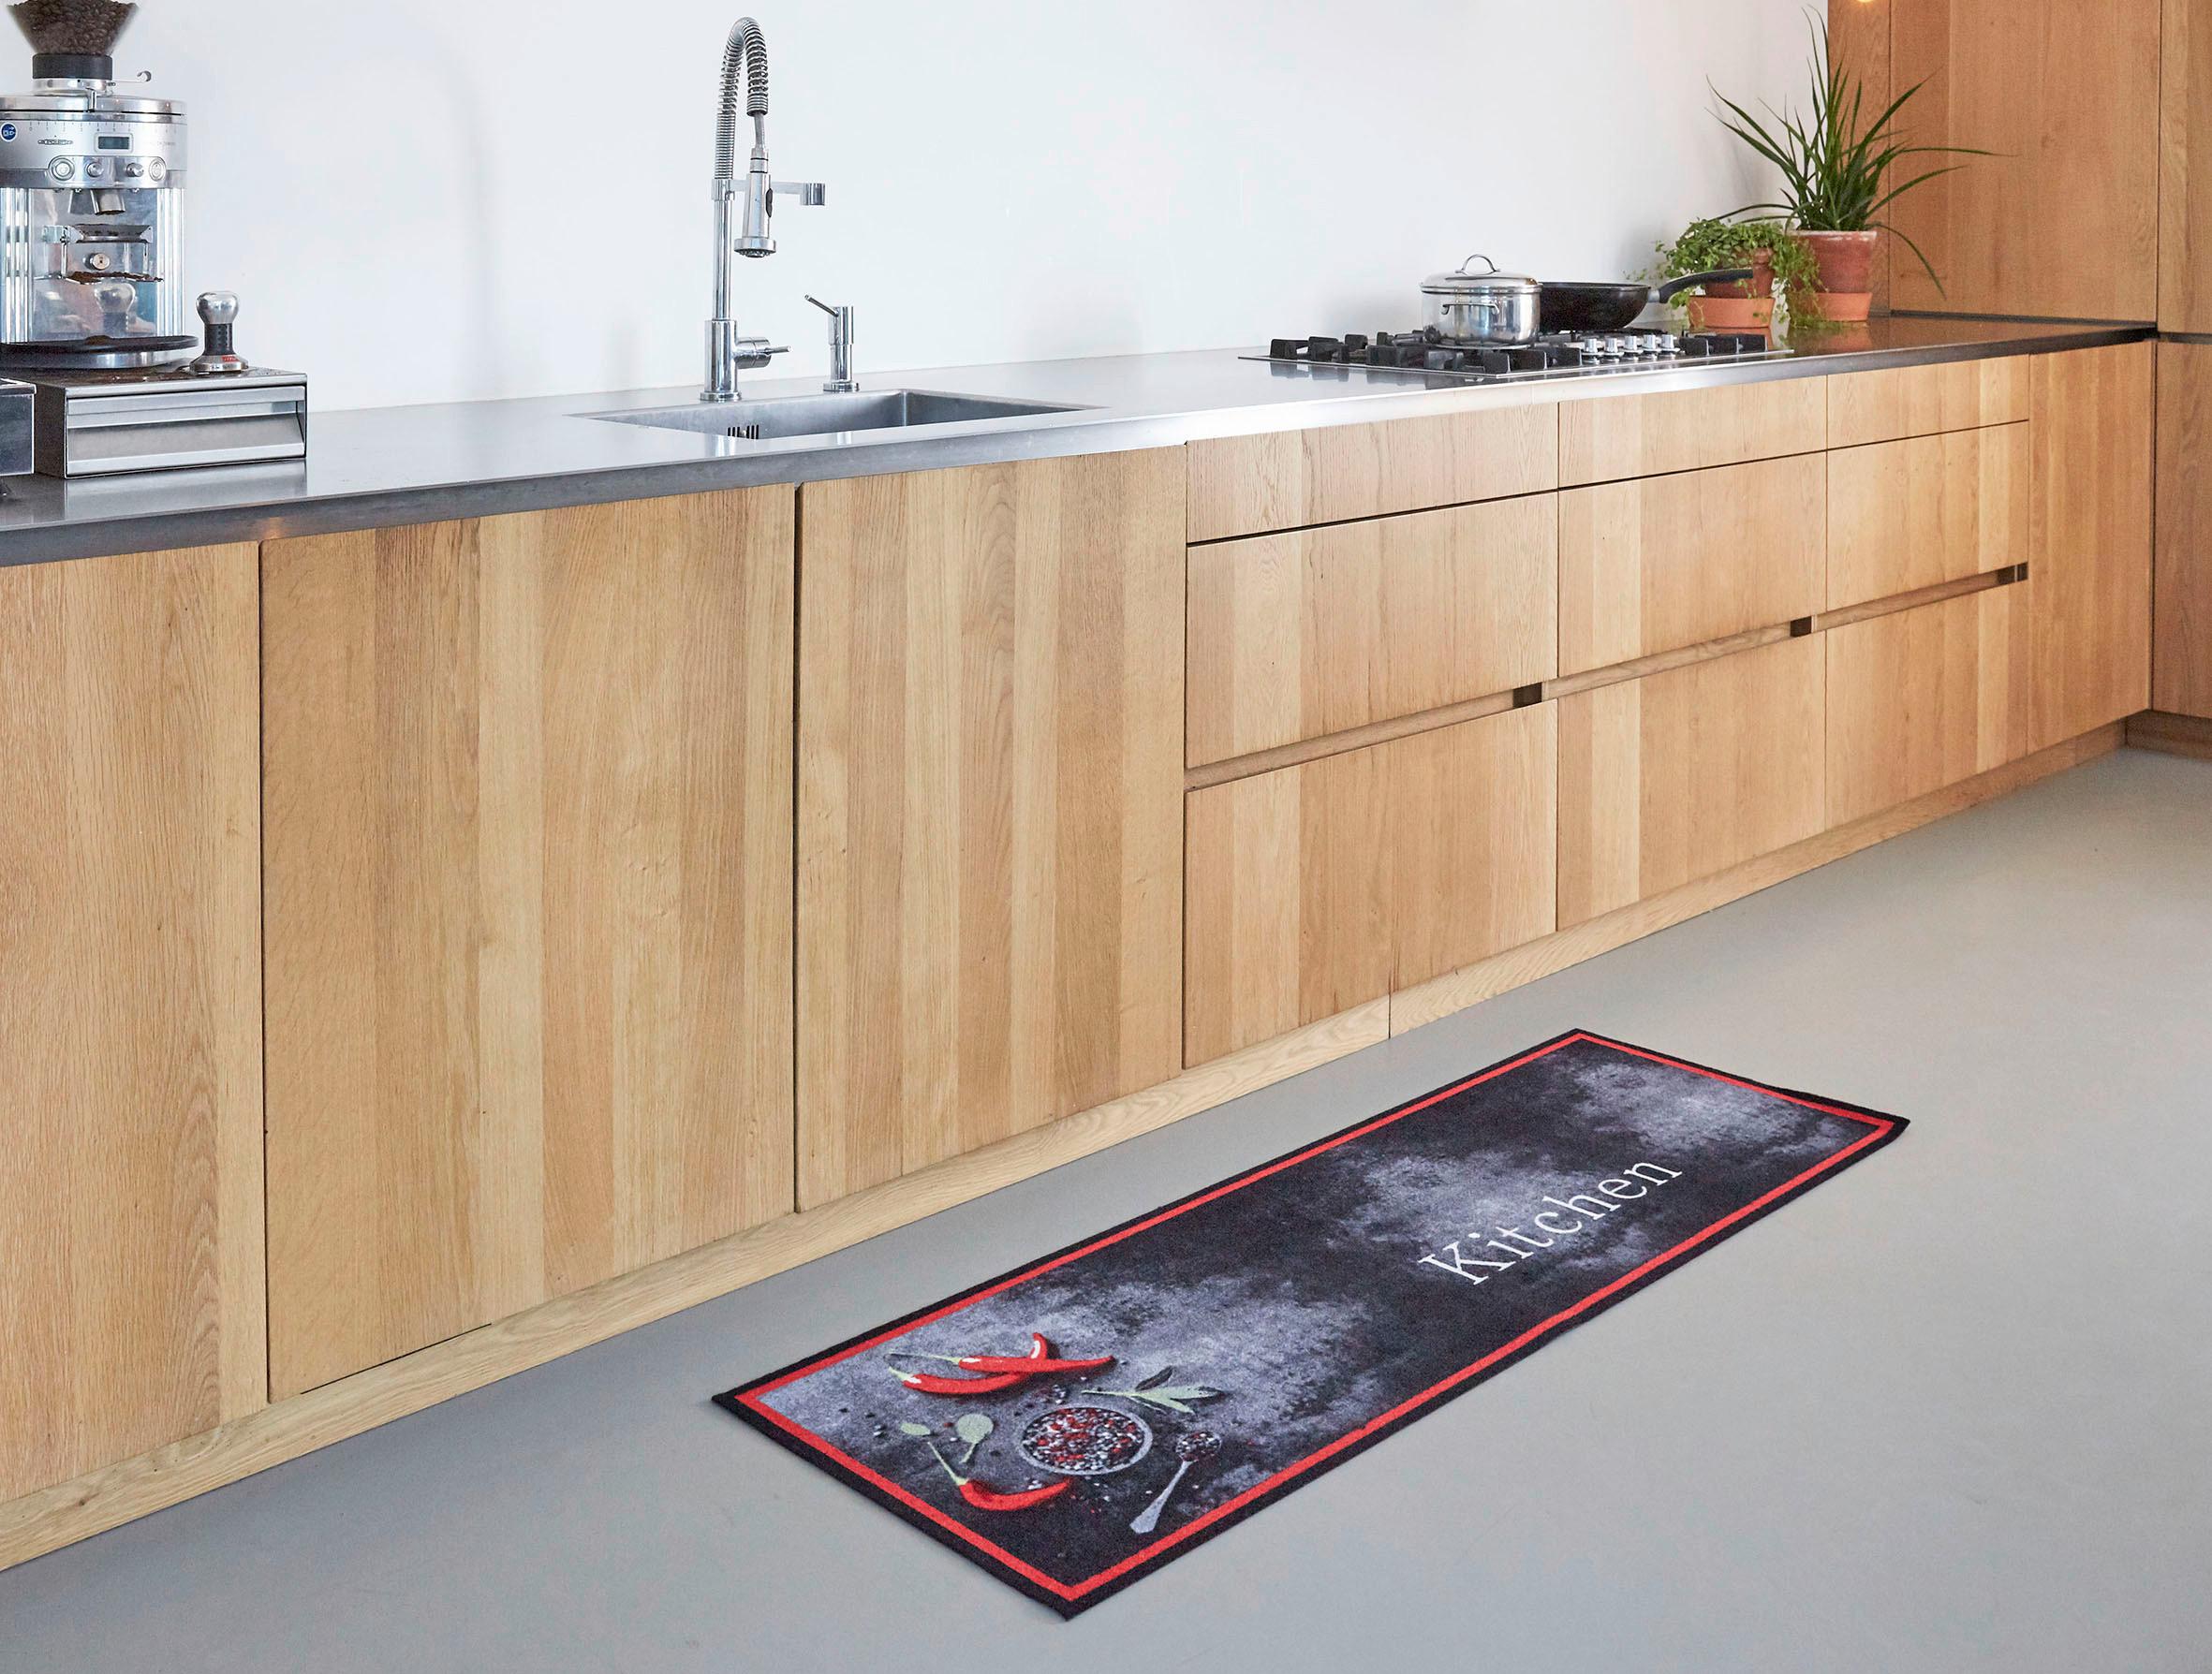 Fußmatte Kitchen ca. 50x150cm - Anthrazit/Rot, MODERN, Textil (50/150cm) - Modern Living